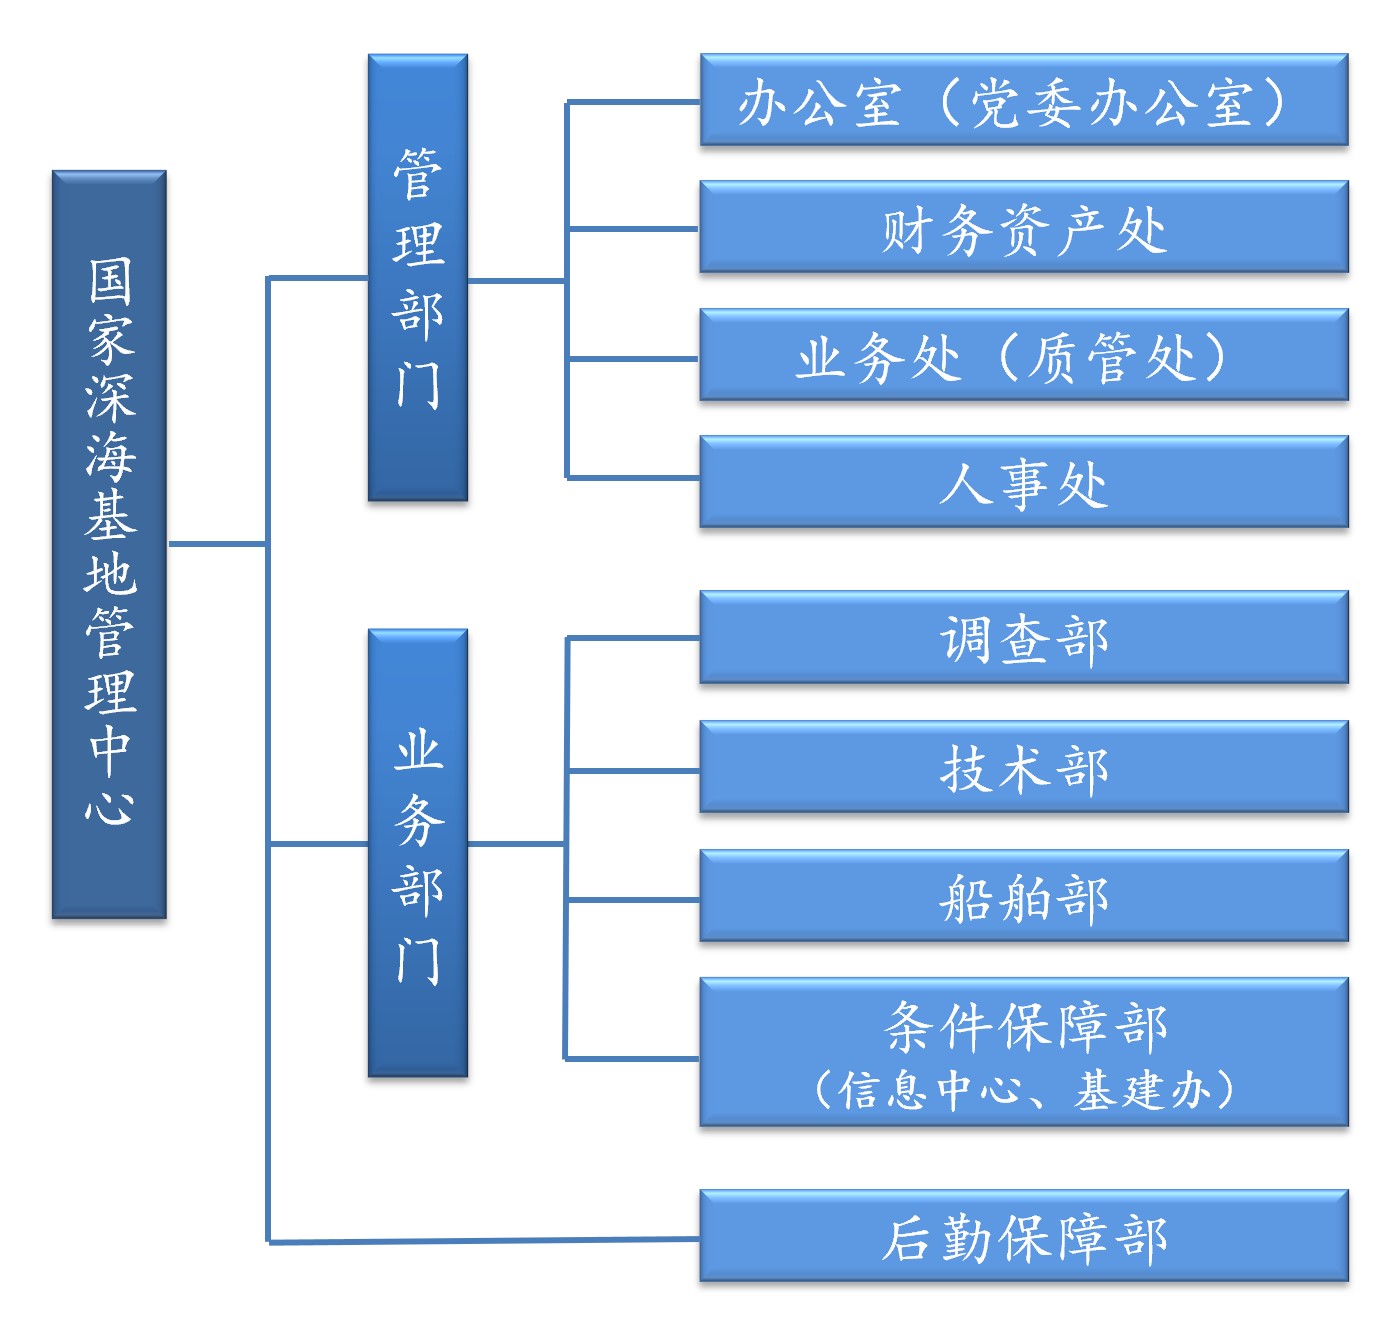 组织机构图.jpg